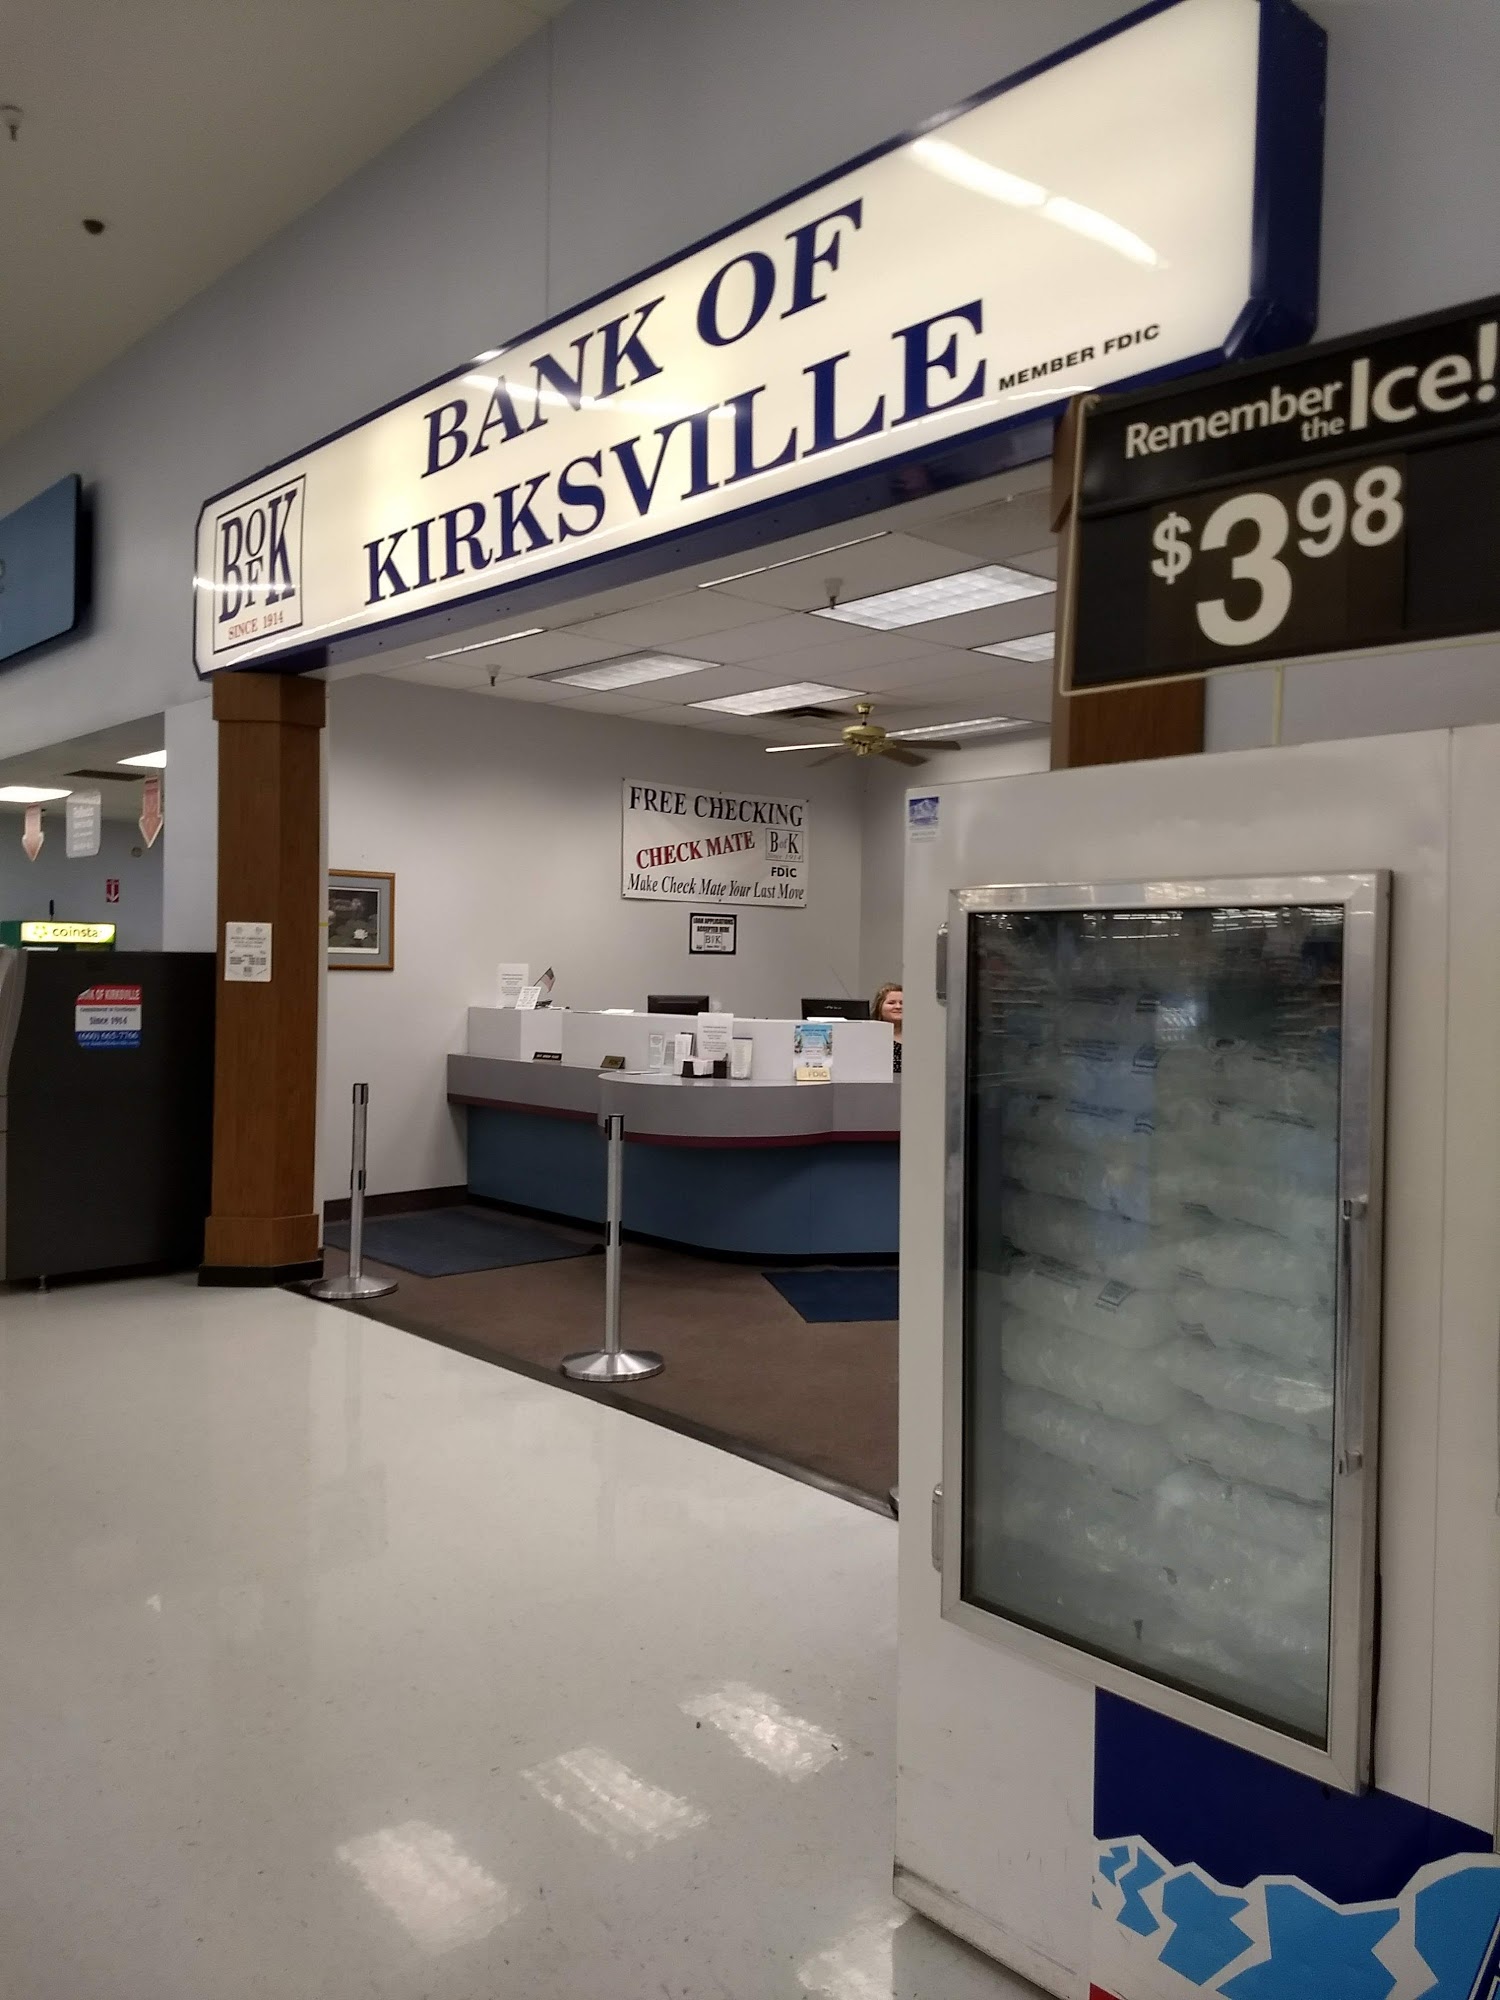 Bank of Kirksville